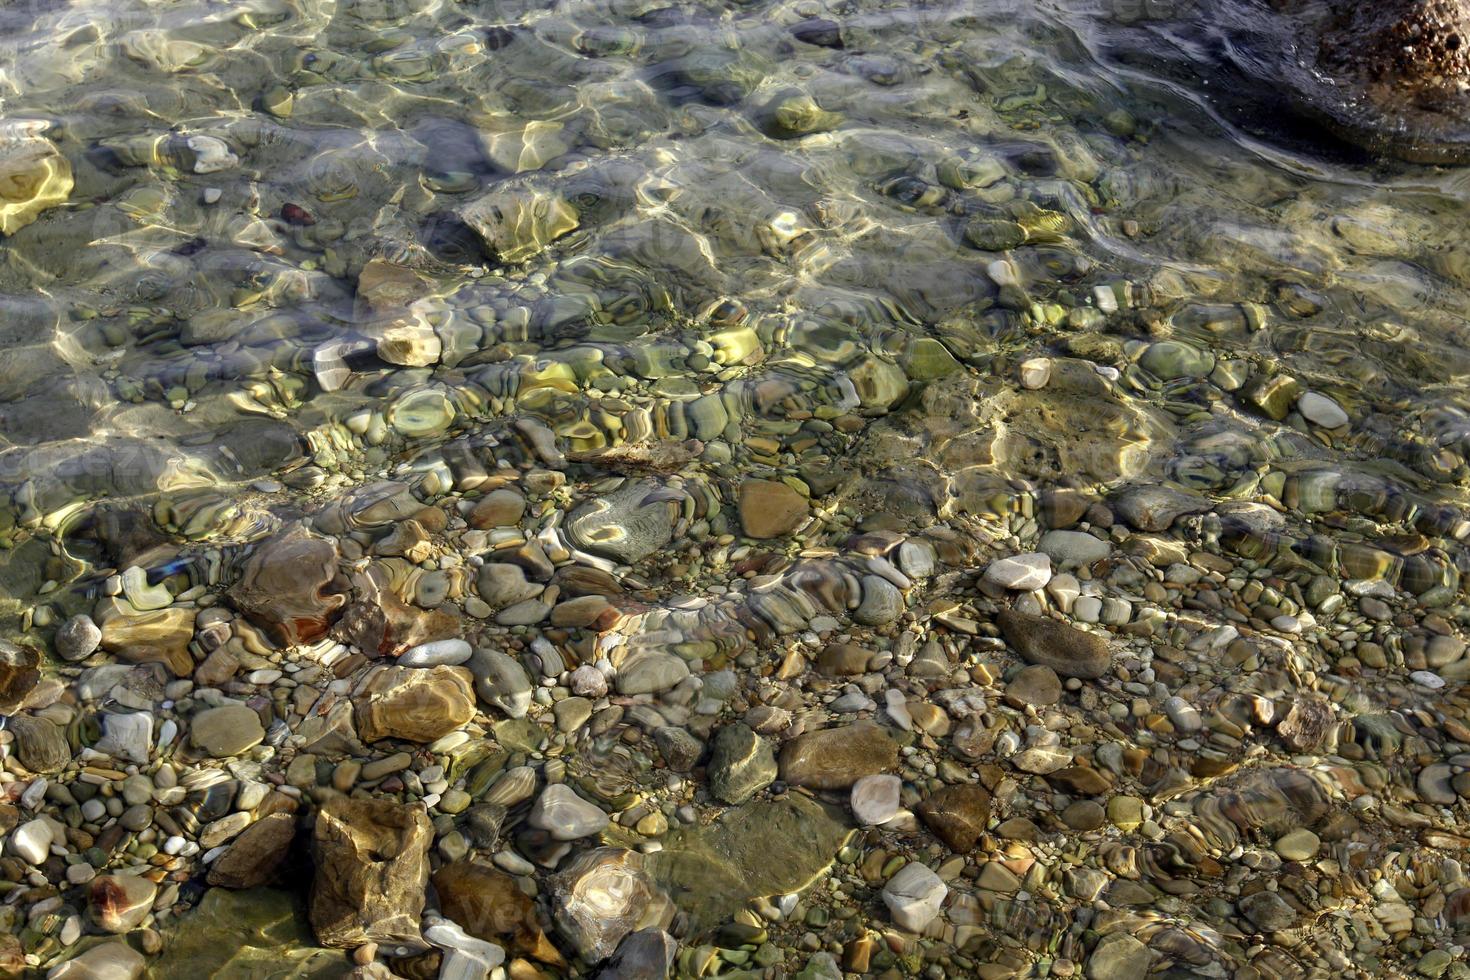 les pierres se trouvent sur les rives de la mer méditerranée. photo